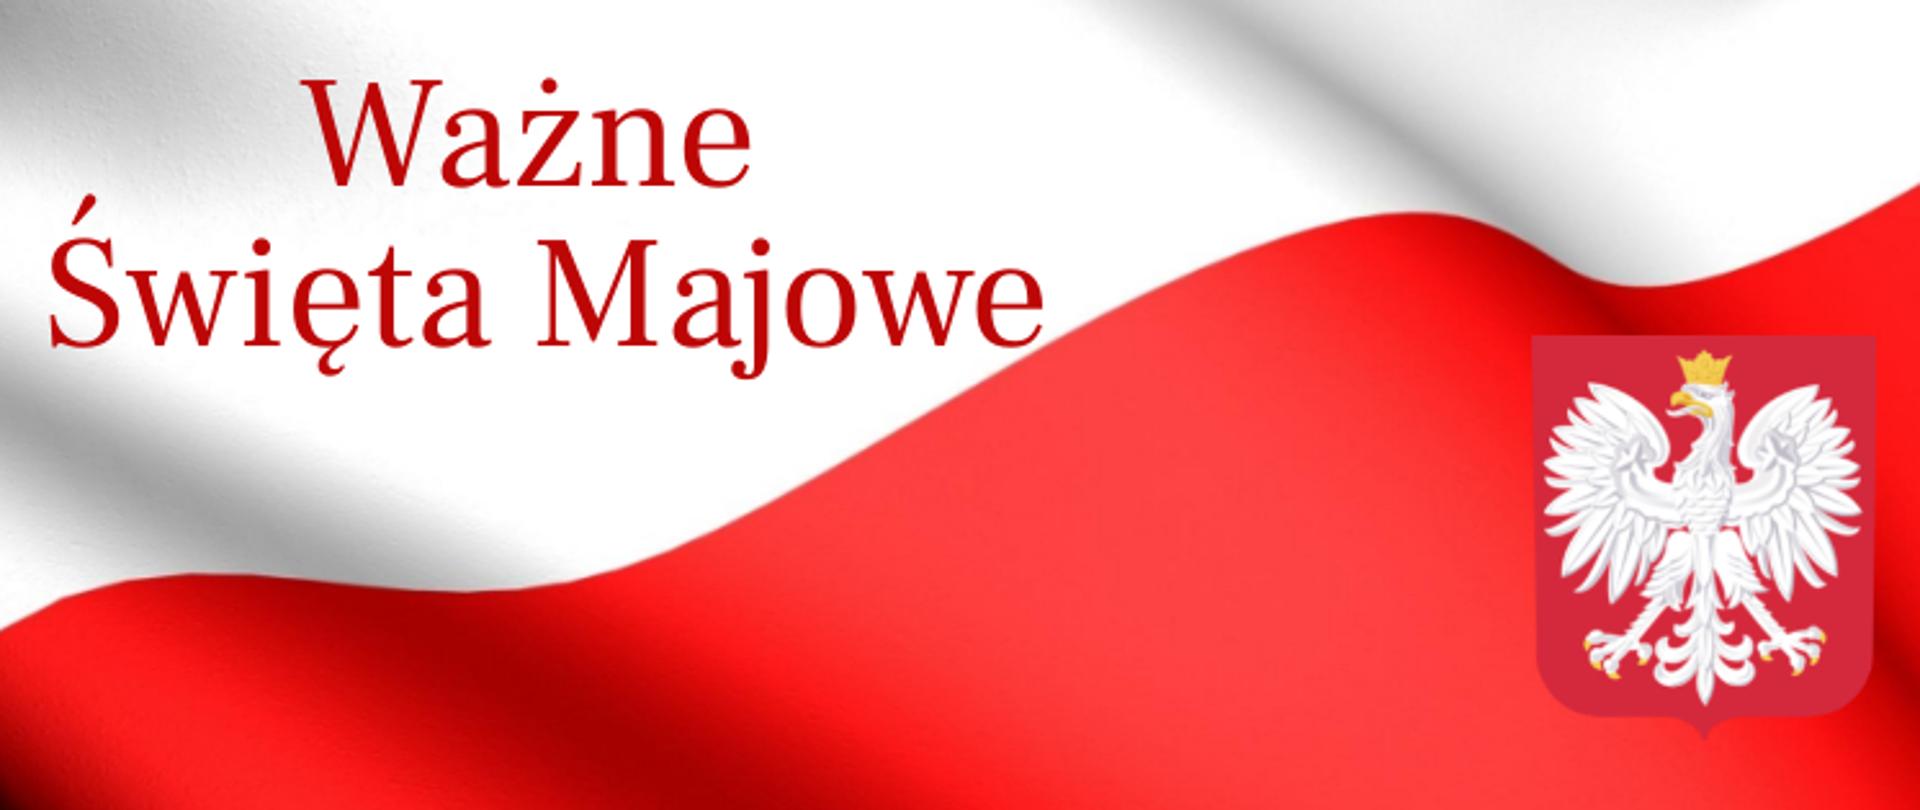 Napis: Ważne Święta Majowe na tle flagi Polski, w prawym dolnym rogu godło Polski